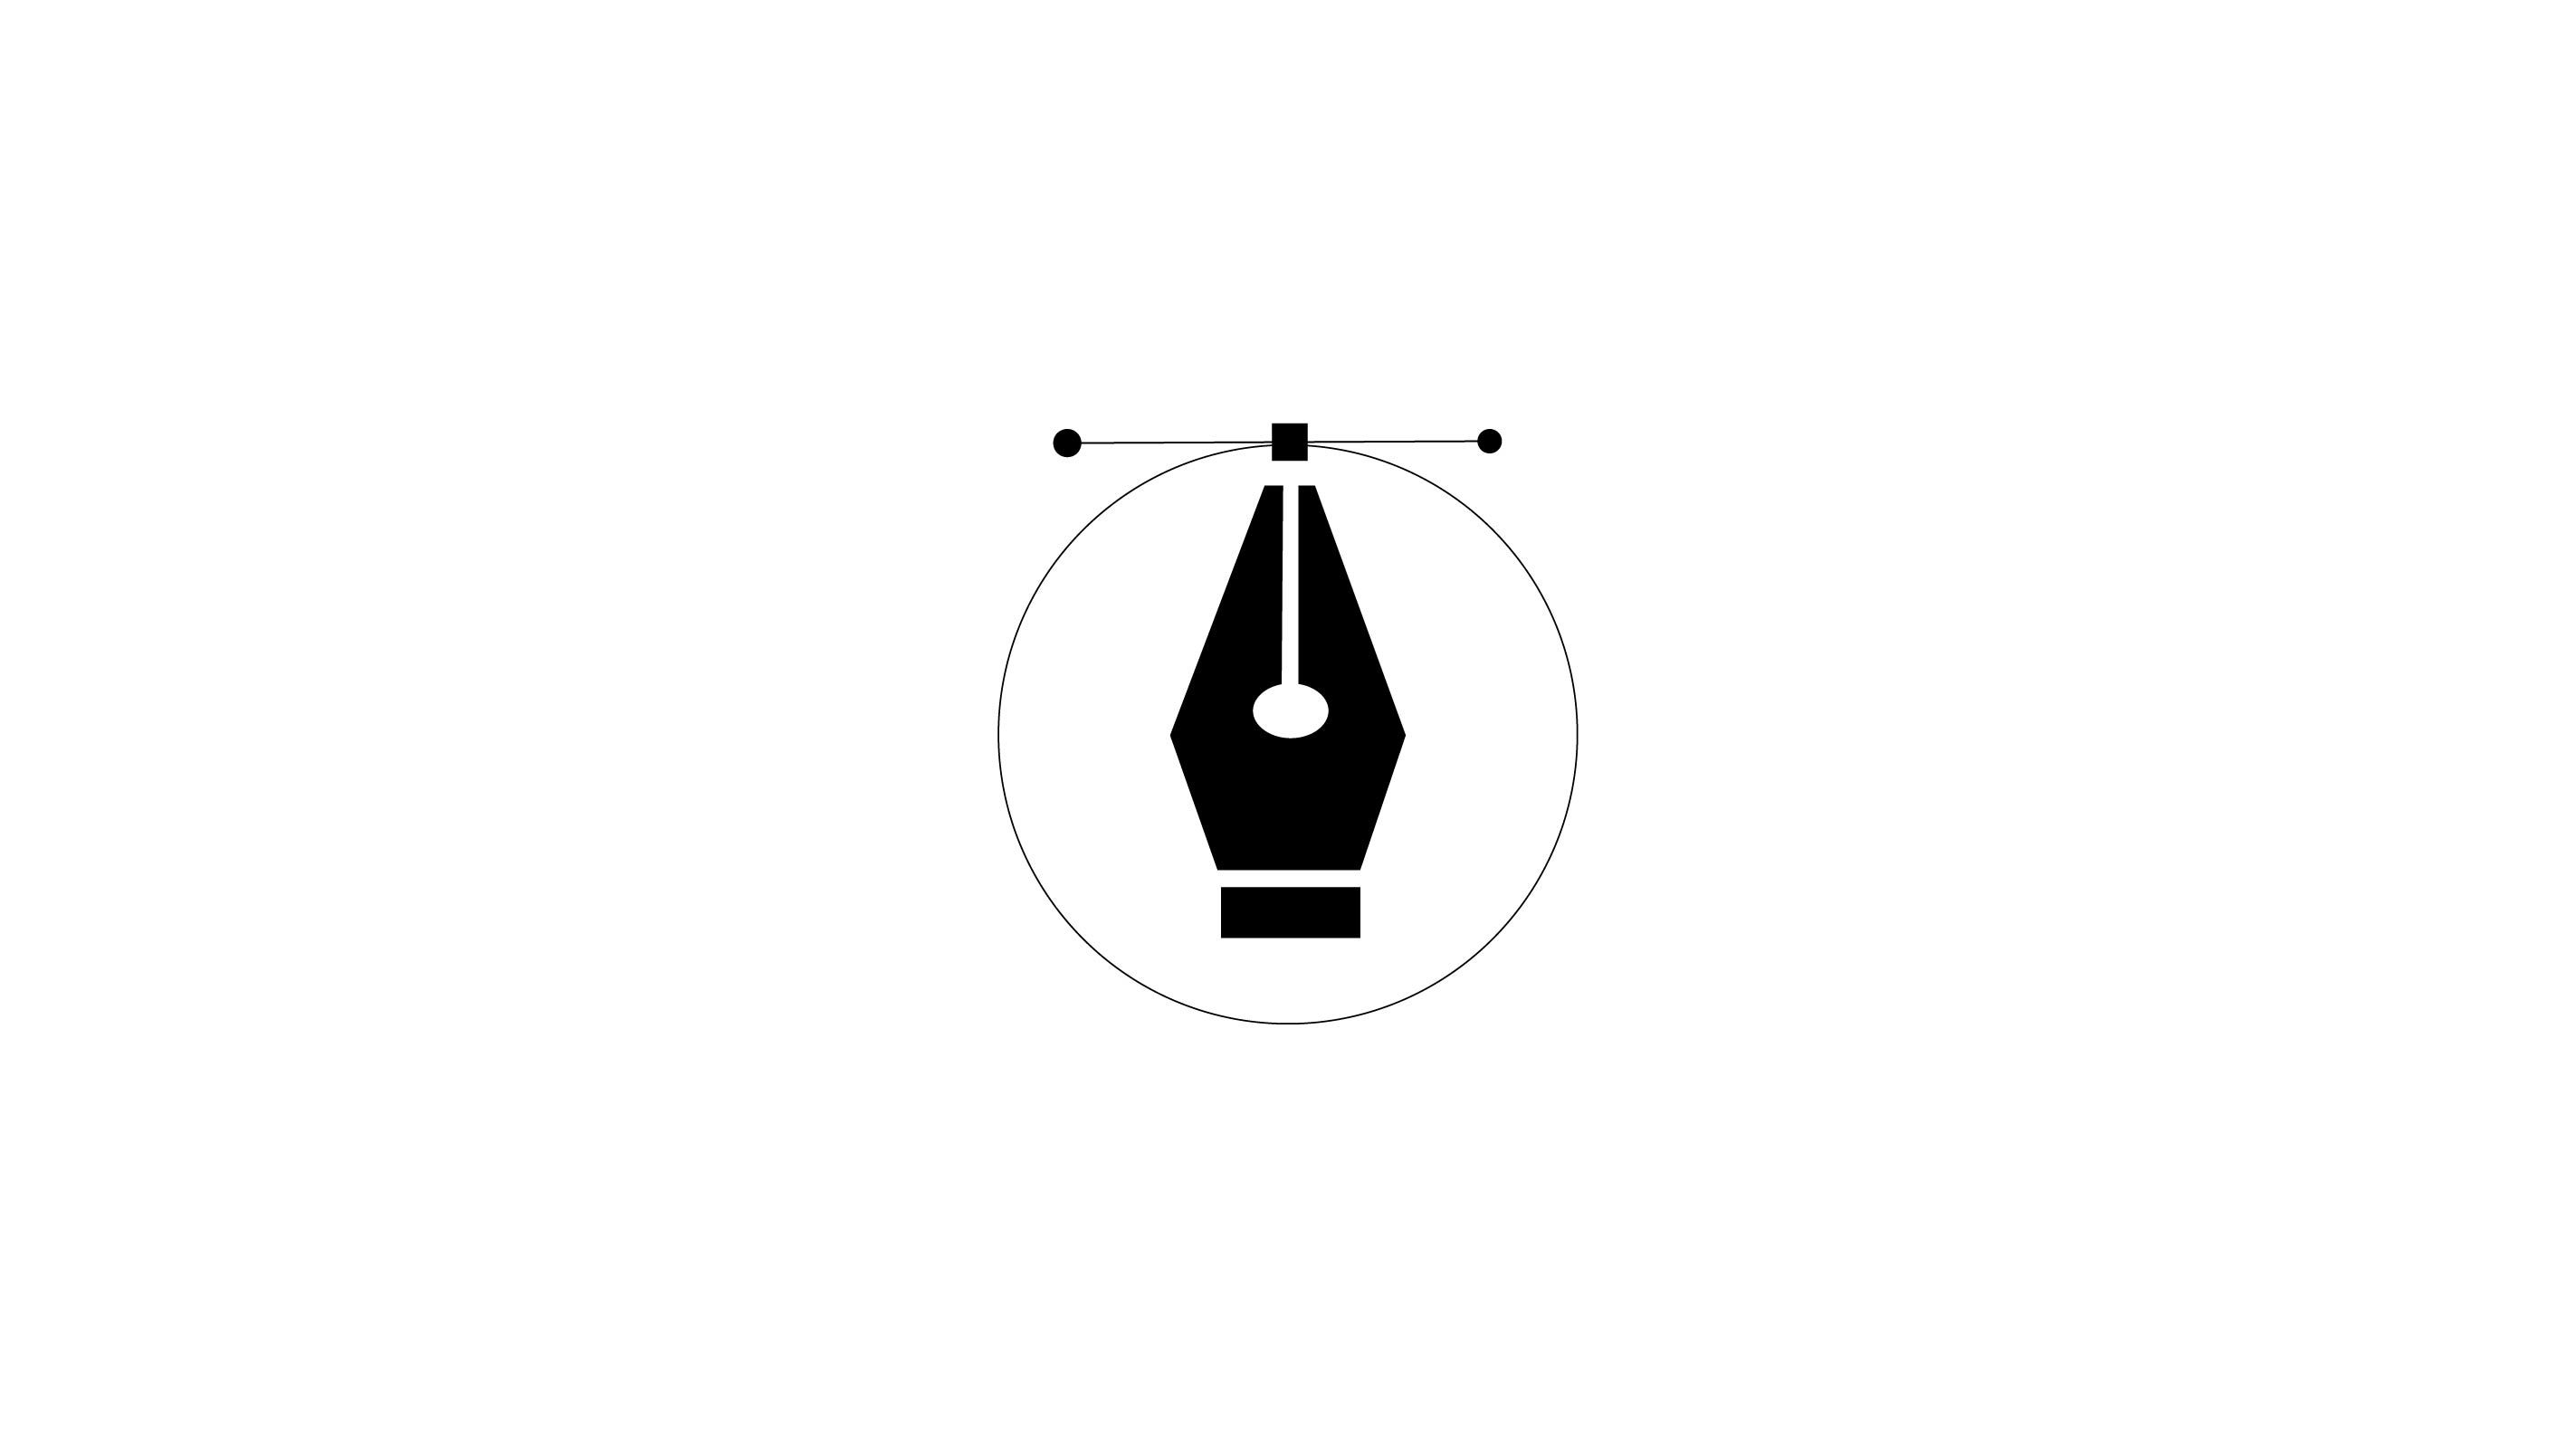 разработка дизайна логотипа за 3 000 руб.